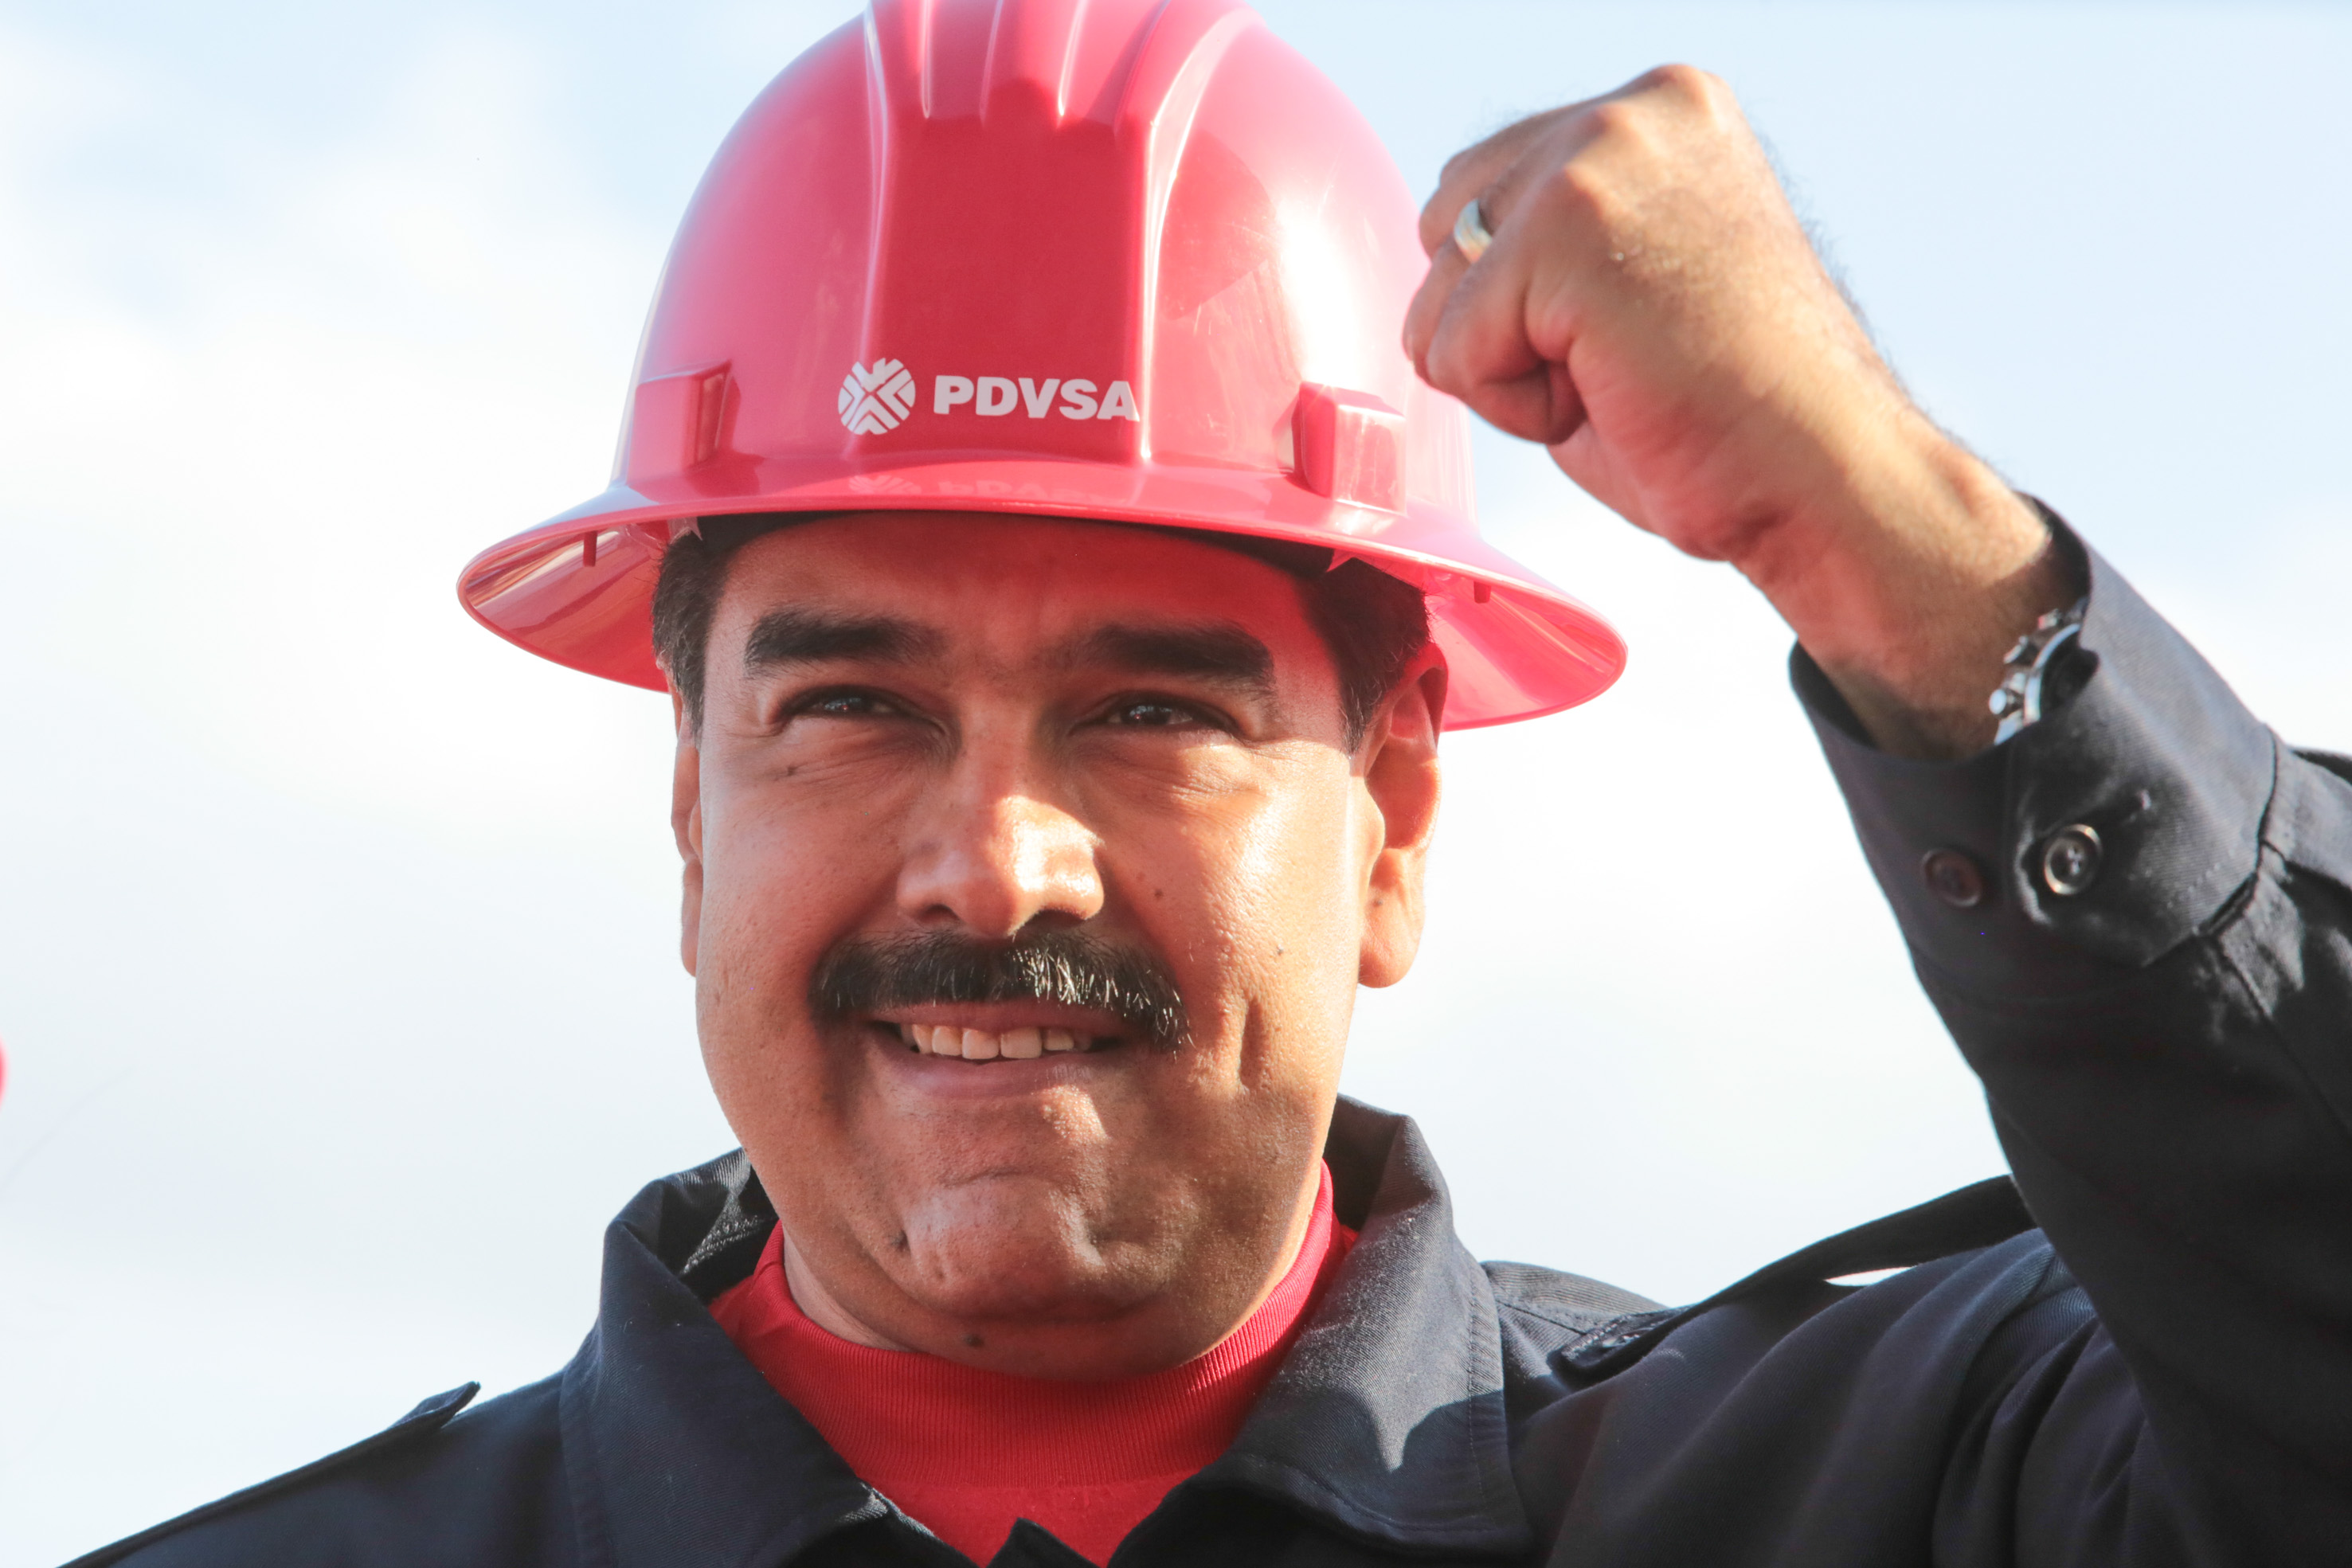 Crujen las finanzas de Pdvsa: Venezuela dice que está analizando opciones para pagar sus deudas